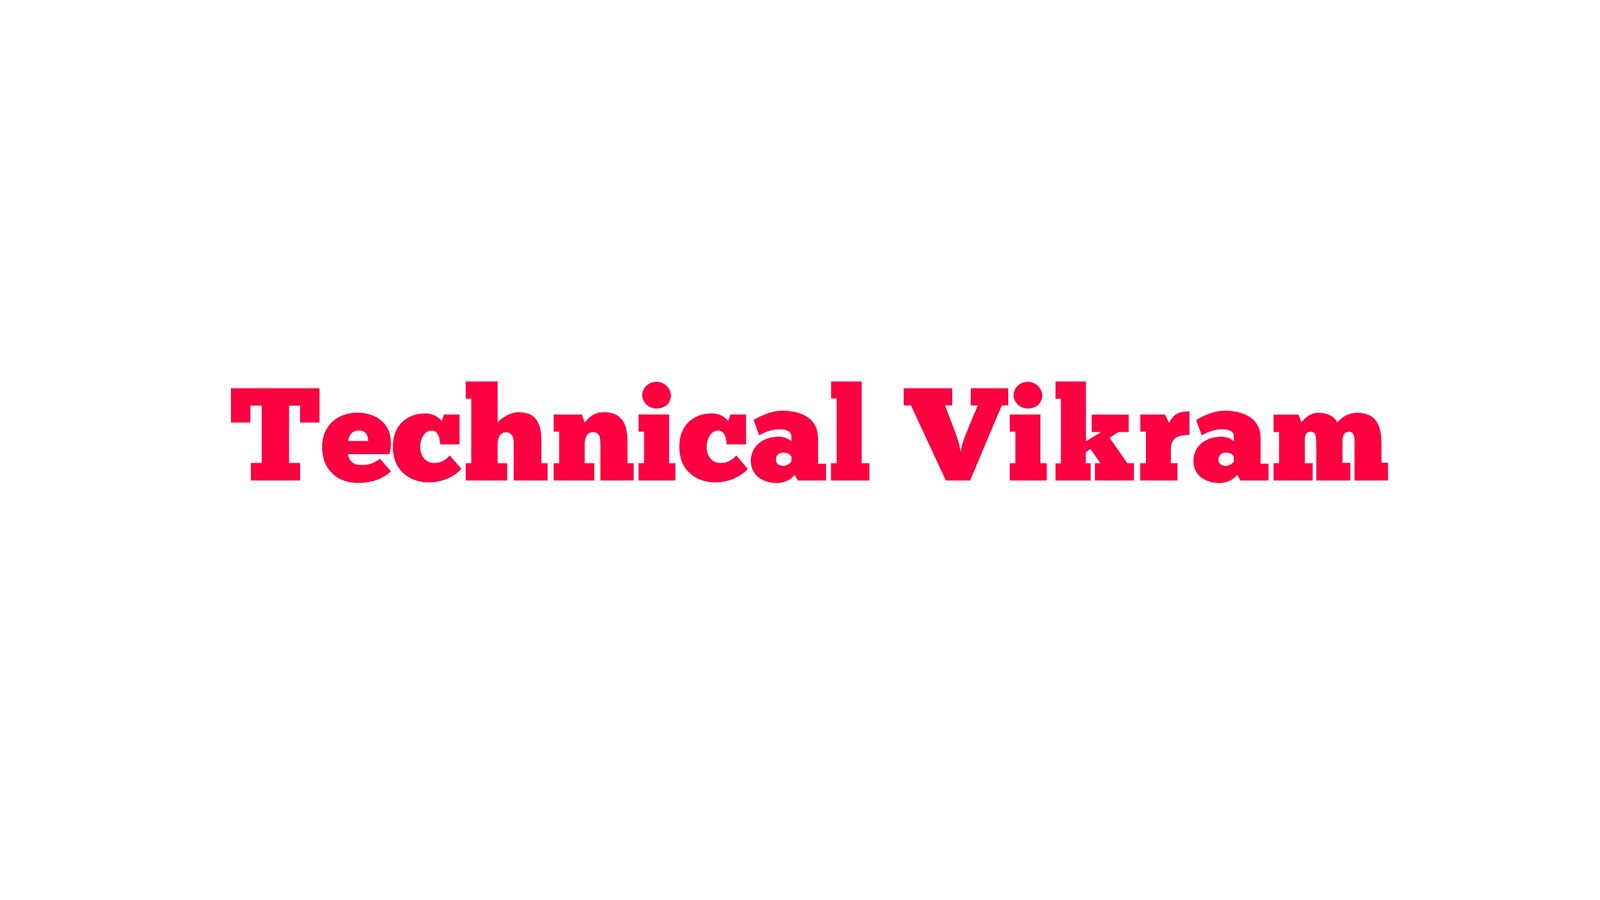 Technical Vikram